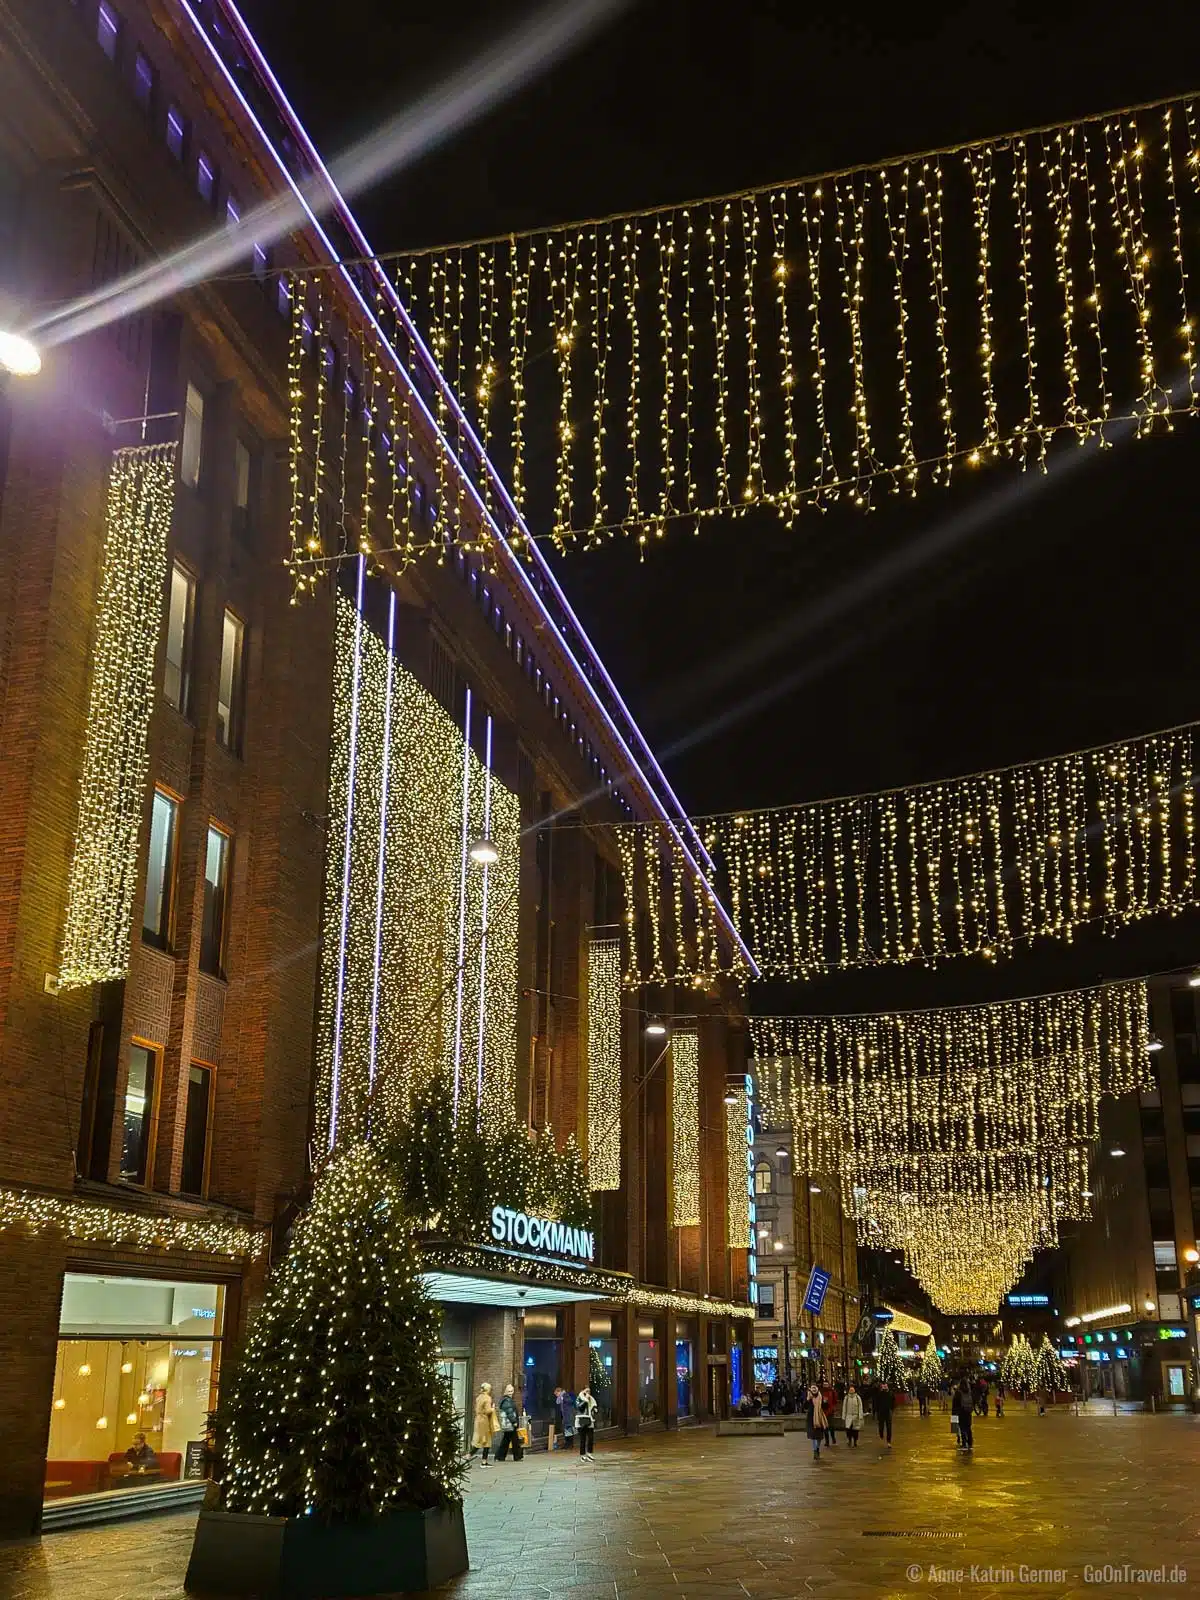 Stockmann ist das drittgrößte Warenhaus in ganz Europa und ist zur Weihnachtszeit besonders schön dekoriert